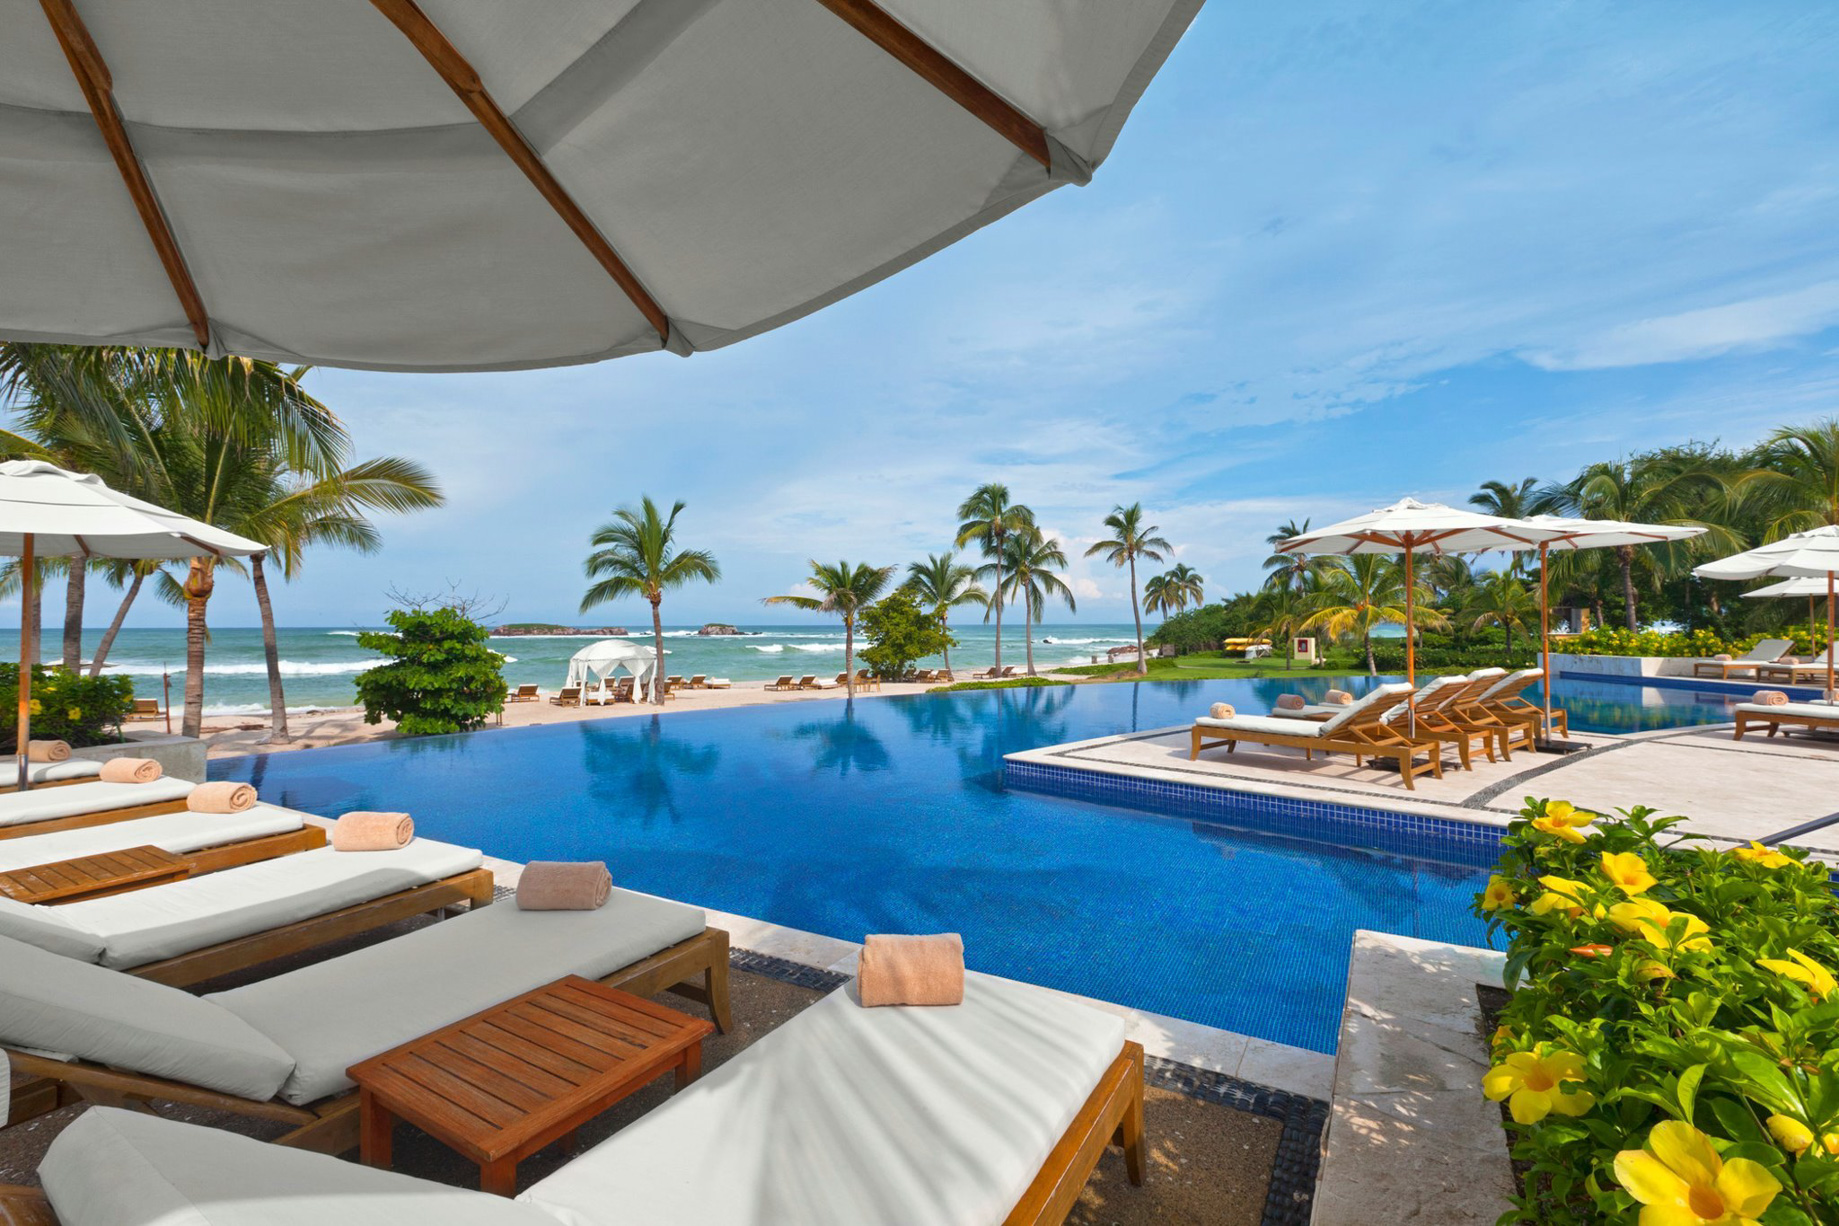 The St. Regis Punta Mita Resort – Nayarit, Mexico – Pool Ocean View